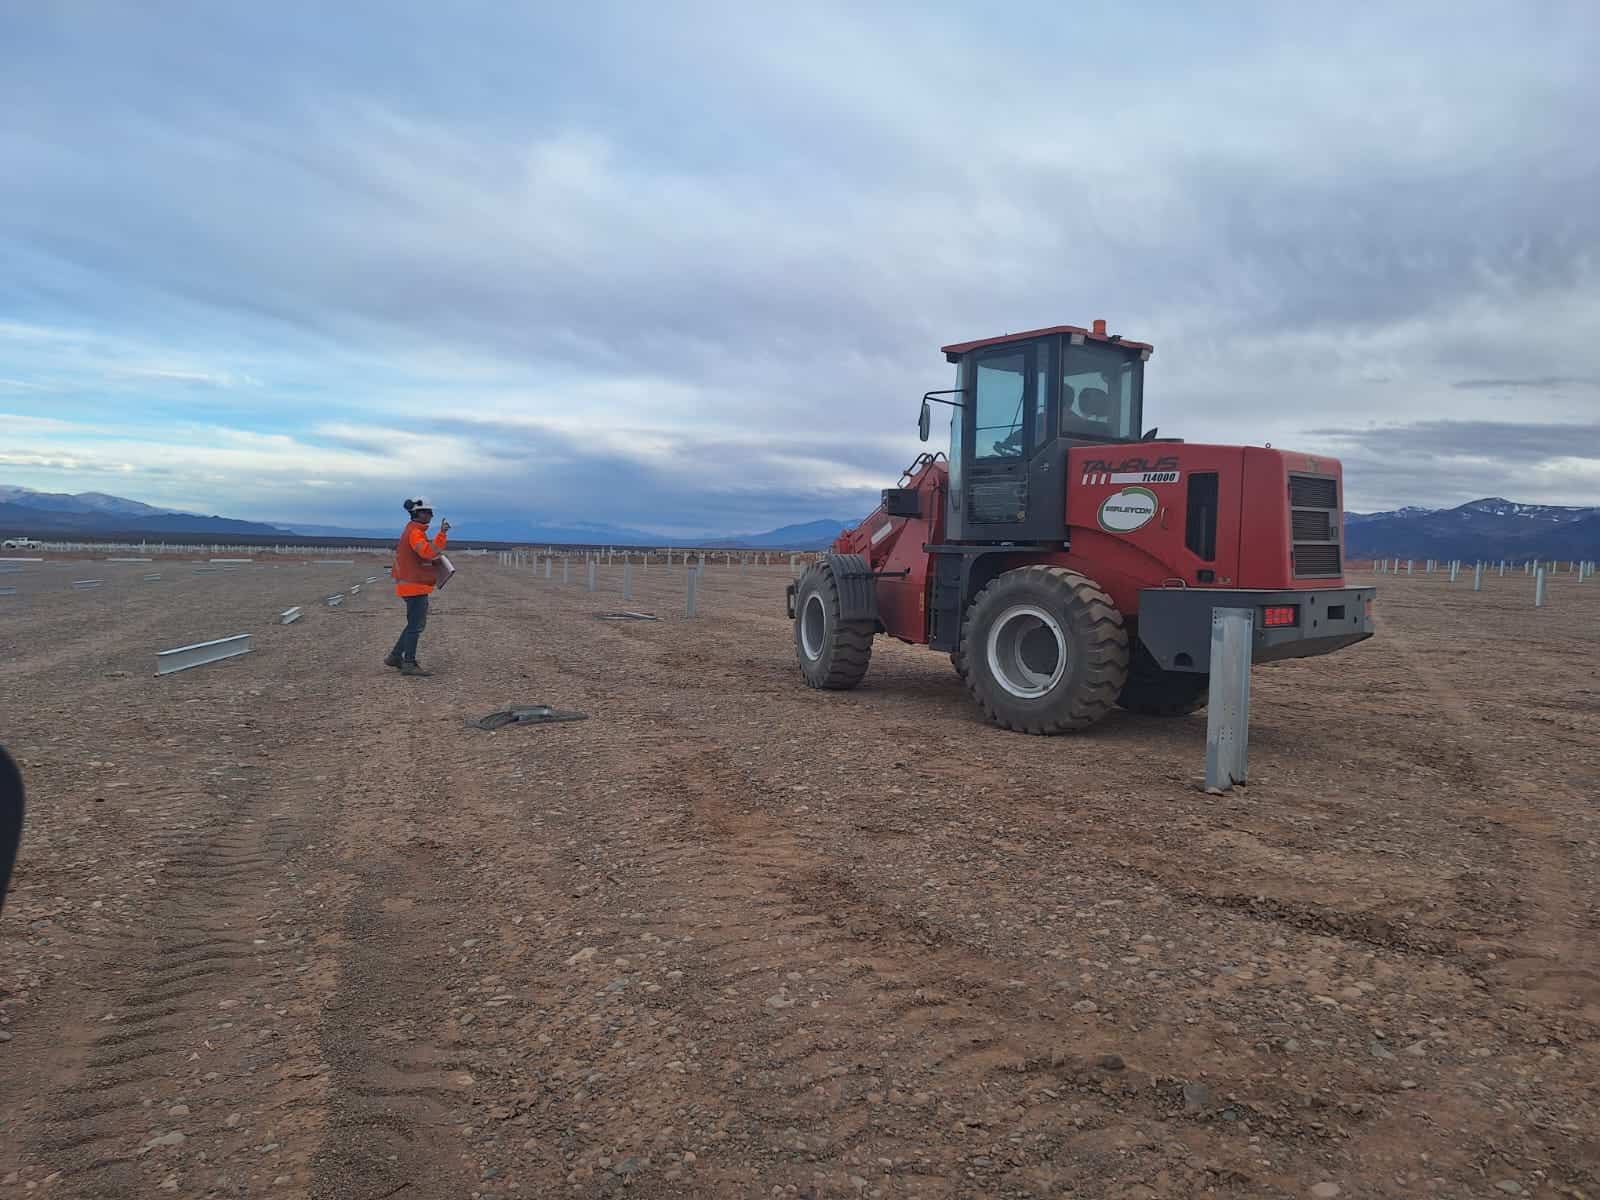 trabajador en obra en desierto junto a retroexcavadora